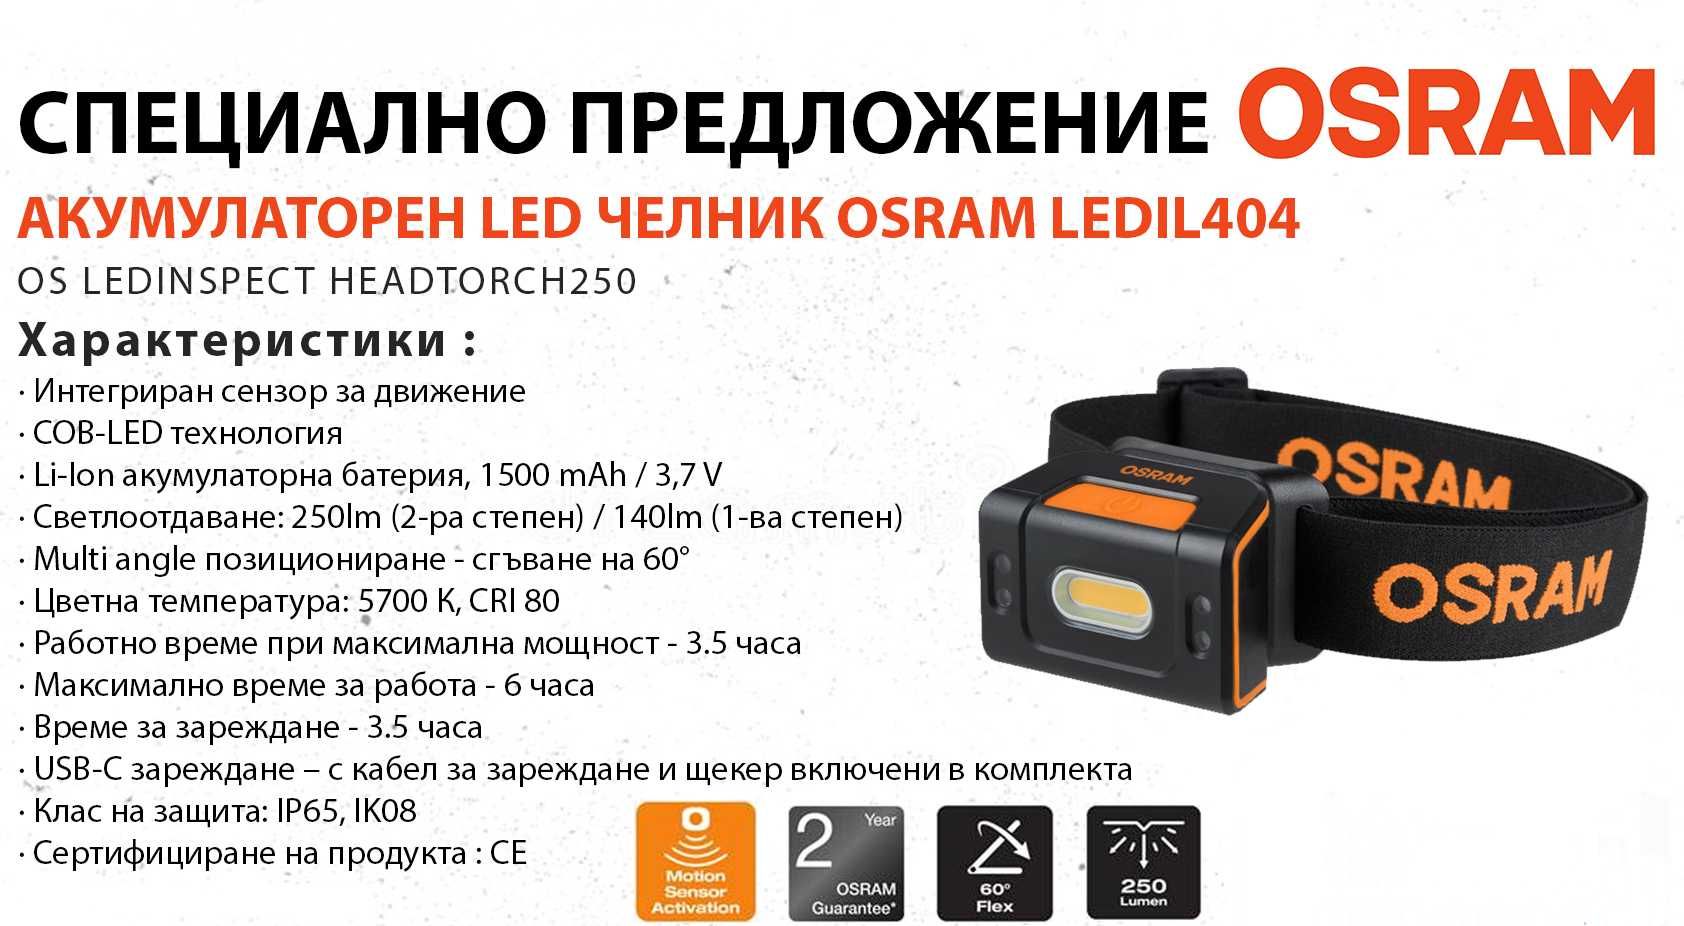 Акумулаторен LED челник OSRAM LEDIL404